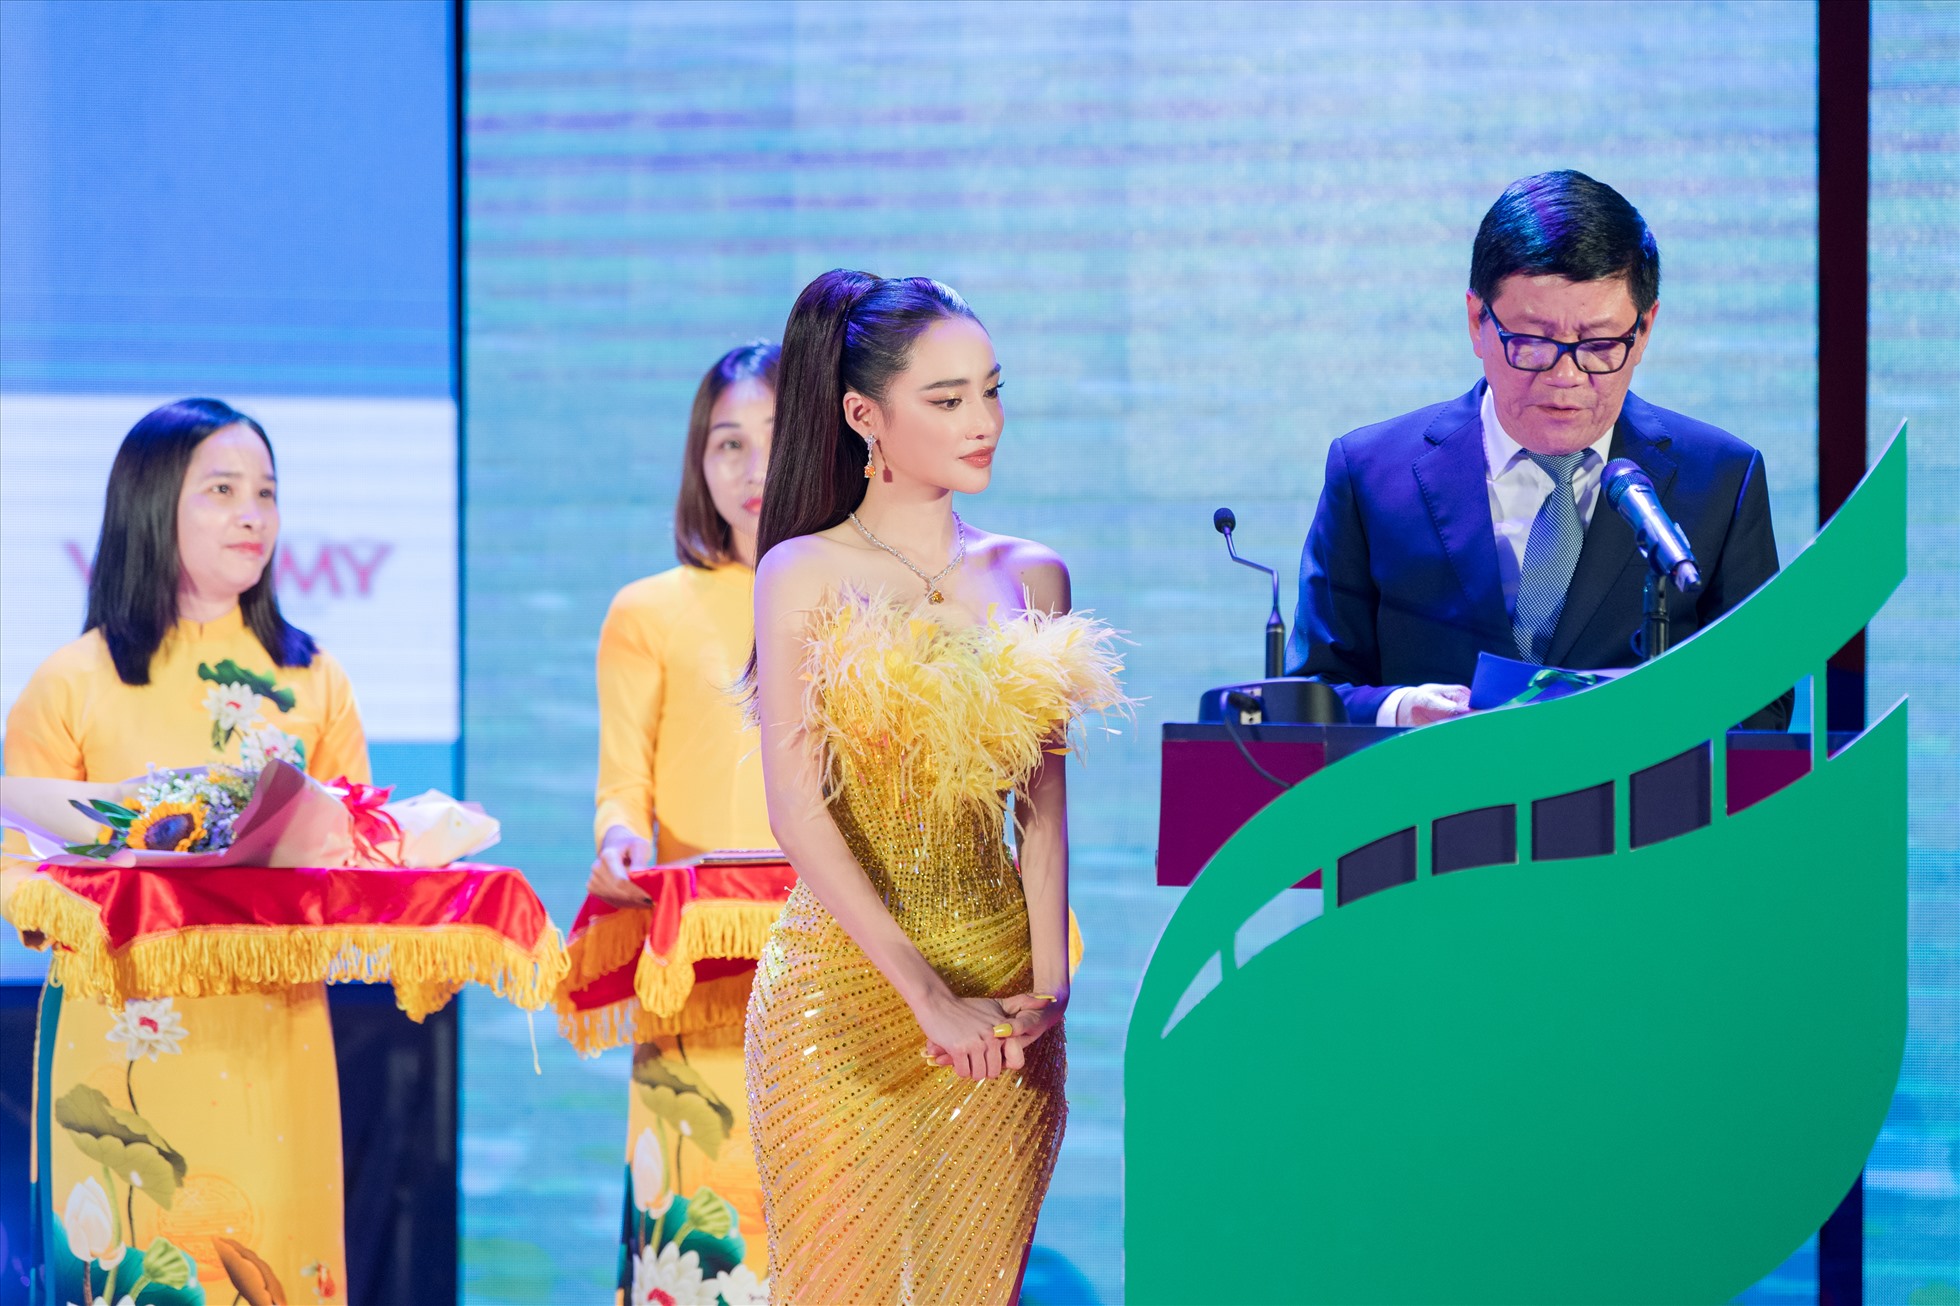 Bên cạnh đó, Tiến sĩ Nguyễn Cao Trí - Chủ tịch Hội đồng Trường Đại học Văn Lang và diễn viên Nhã Phương cũng đã lên công bố và trao giải đồng cho bộ phim xuất sắc của nhóm sinh viên trẻ. Ảnh: NSCC.